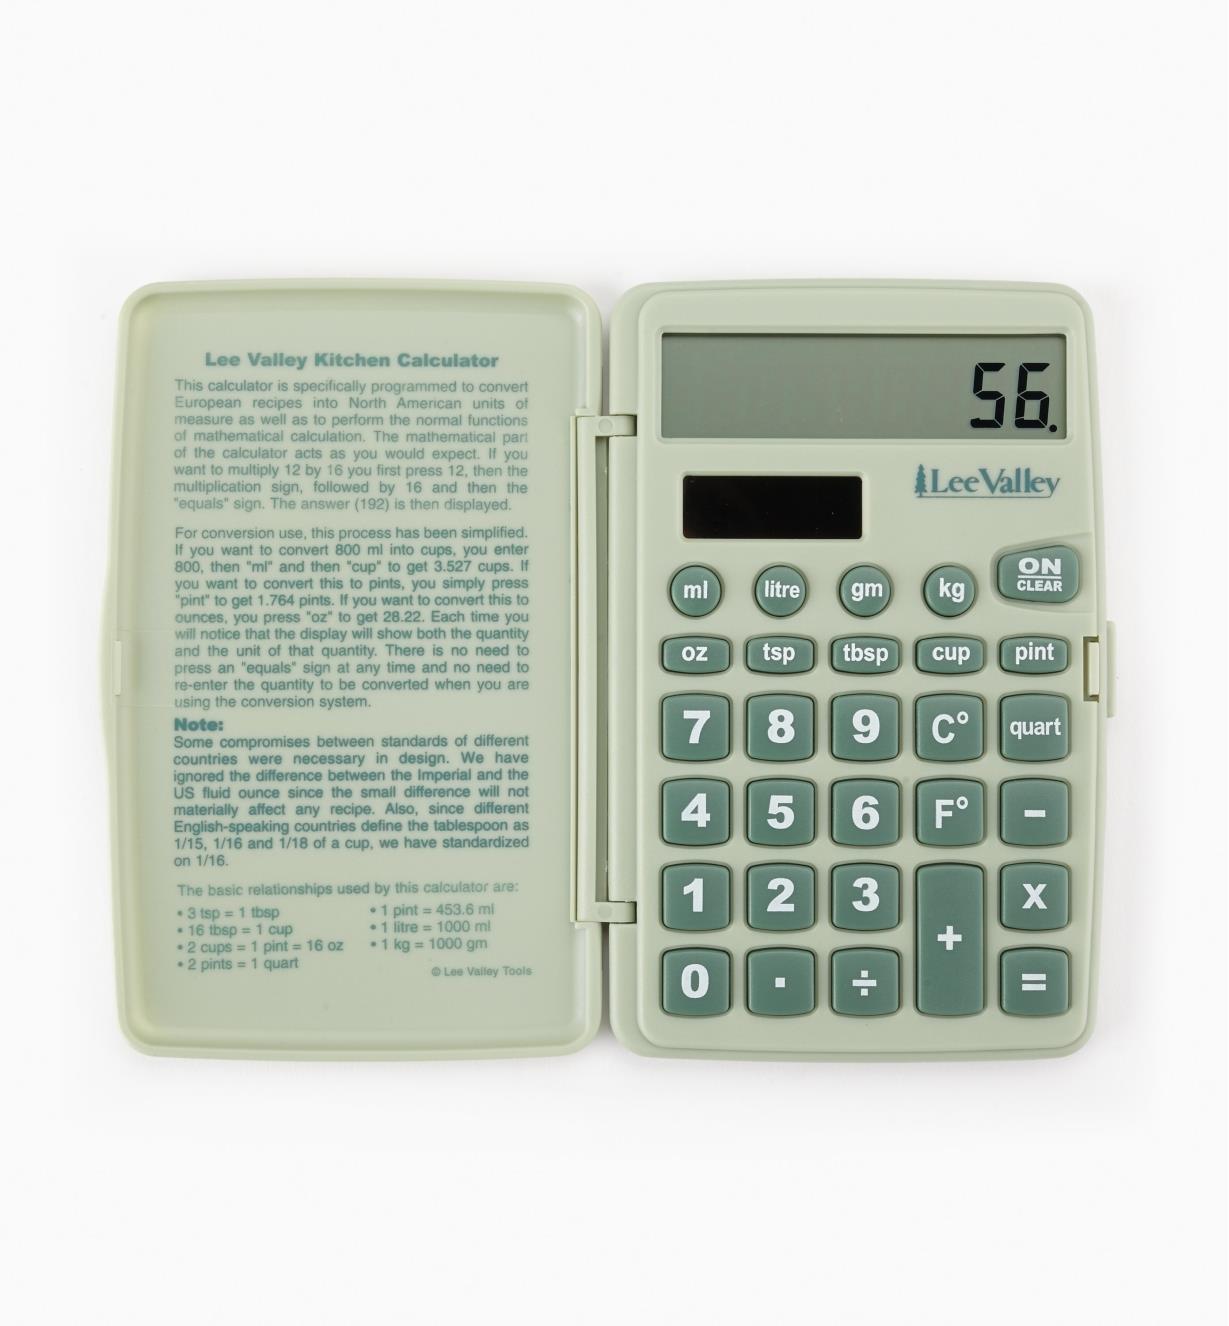 EV160 - Calculatrice de cuisine Lee Valley